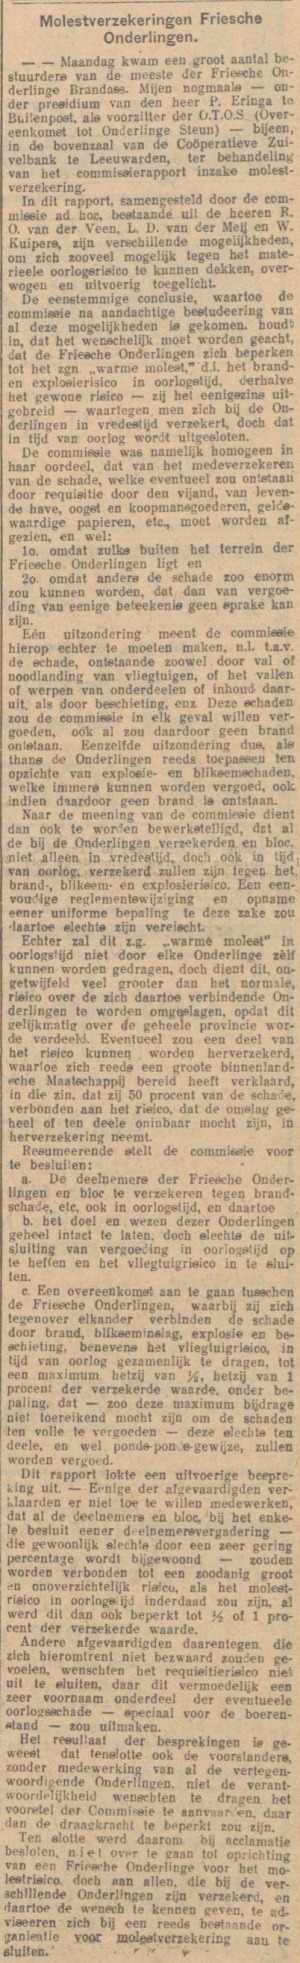 Leeuwarder nieuwsblad, 22-11-1939